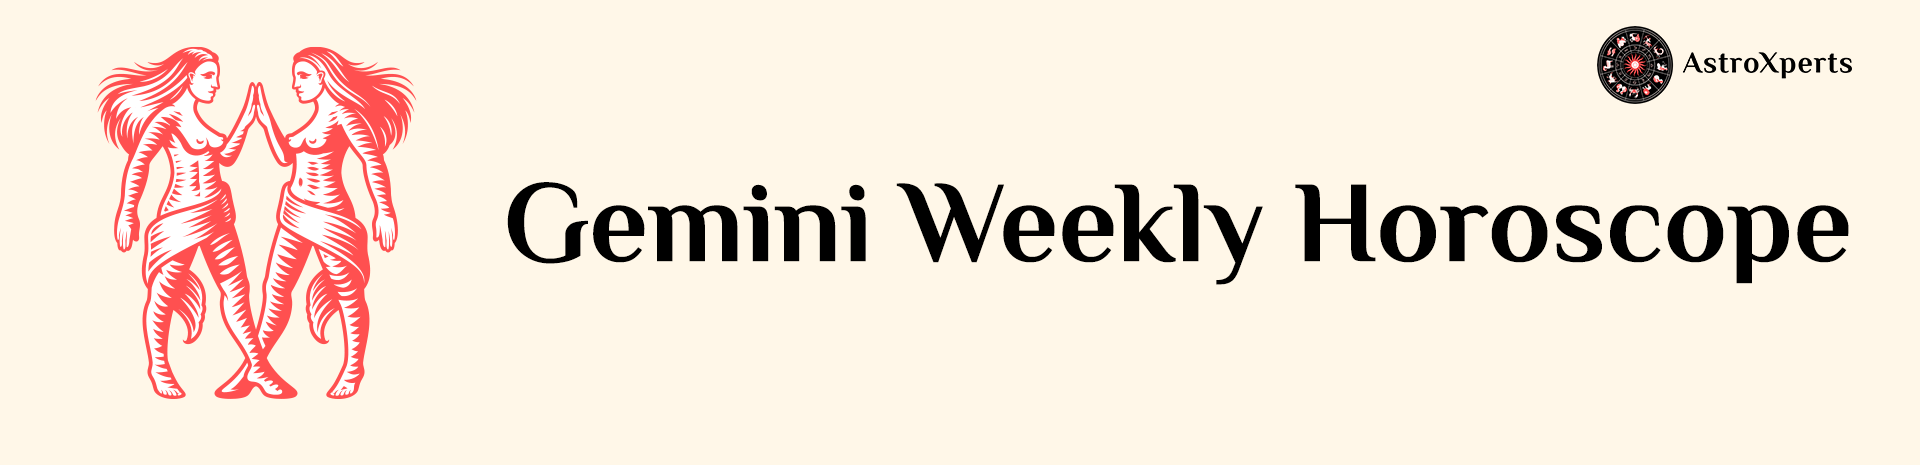 Gemini Weekly